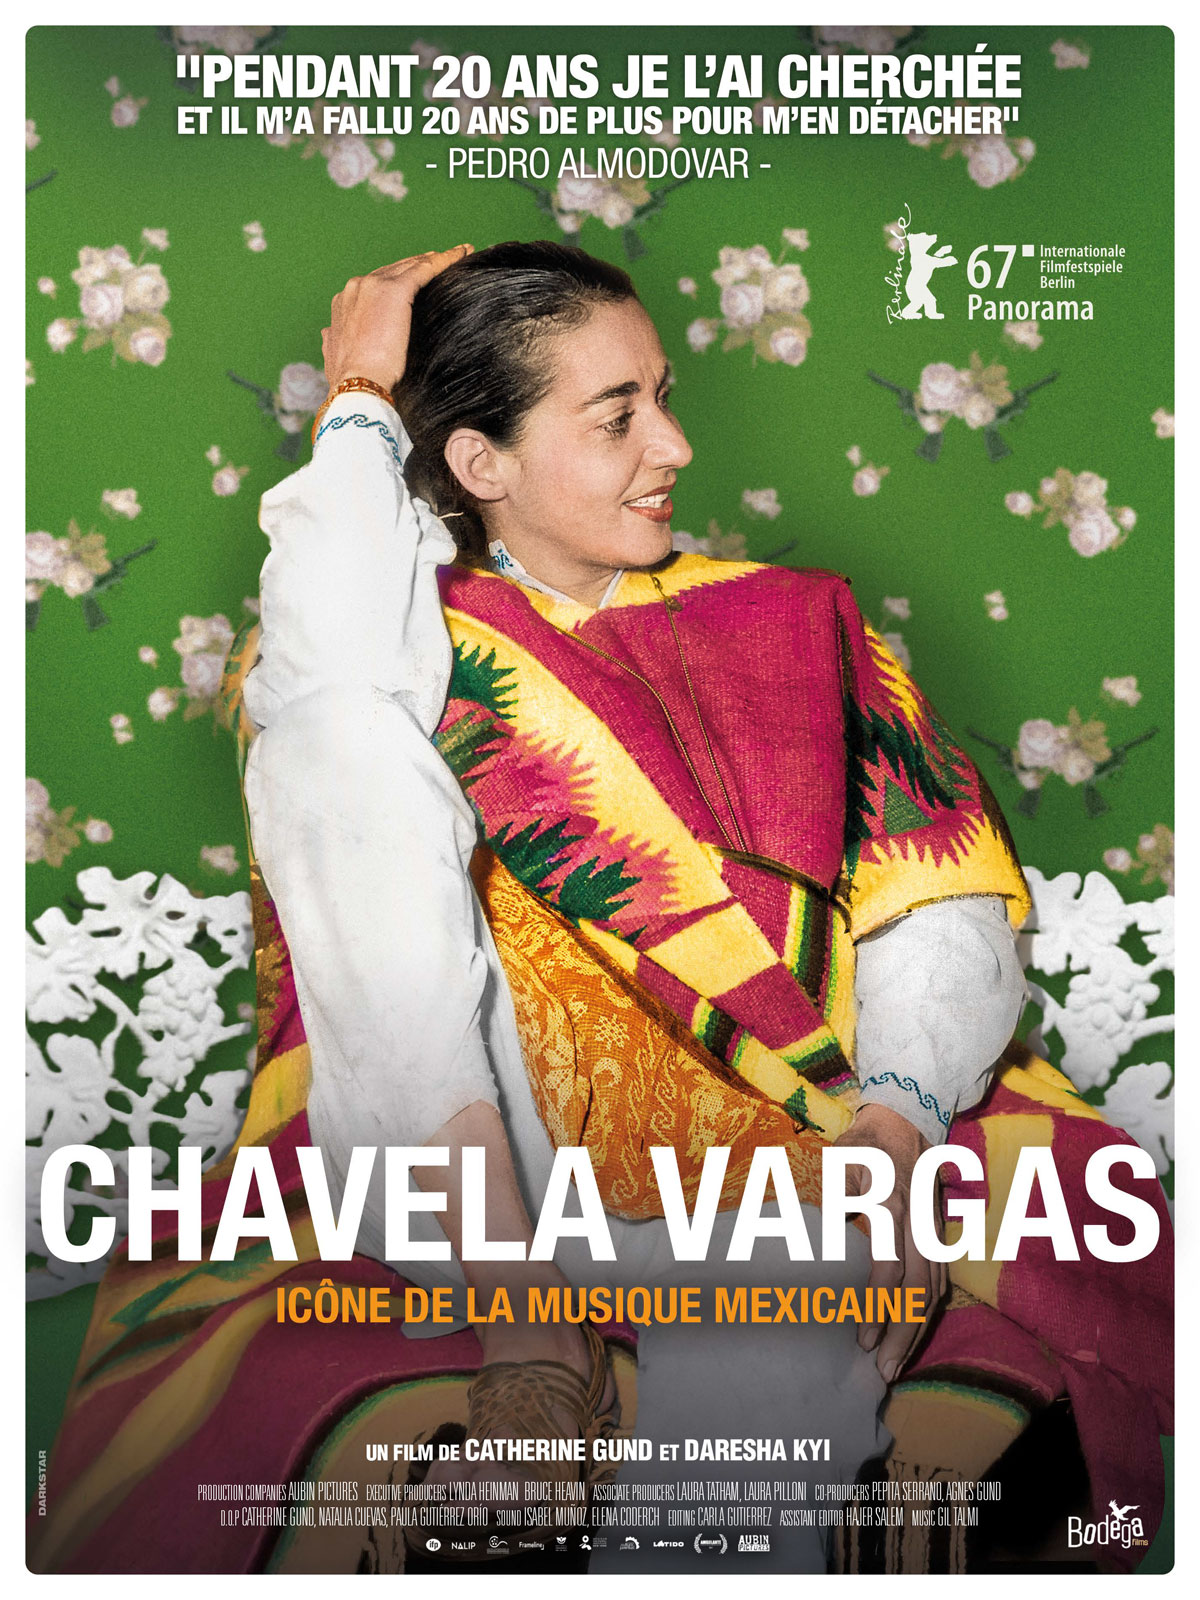 De Frida Kahlo à Pedro Almodovar, artiste inspirante et inspirée, ce récit composé d’images rares révèle une femme à la vie iconoclaste et d'une modernité saisissante. Figure de proue de la musique mexicaine Ranchera, CHAVELA VARGAS, restera à jamais empreinte de récits et de légendes. 